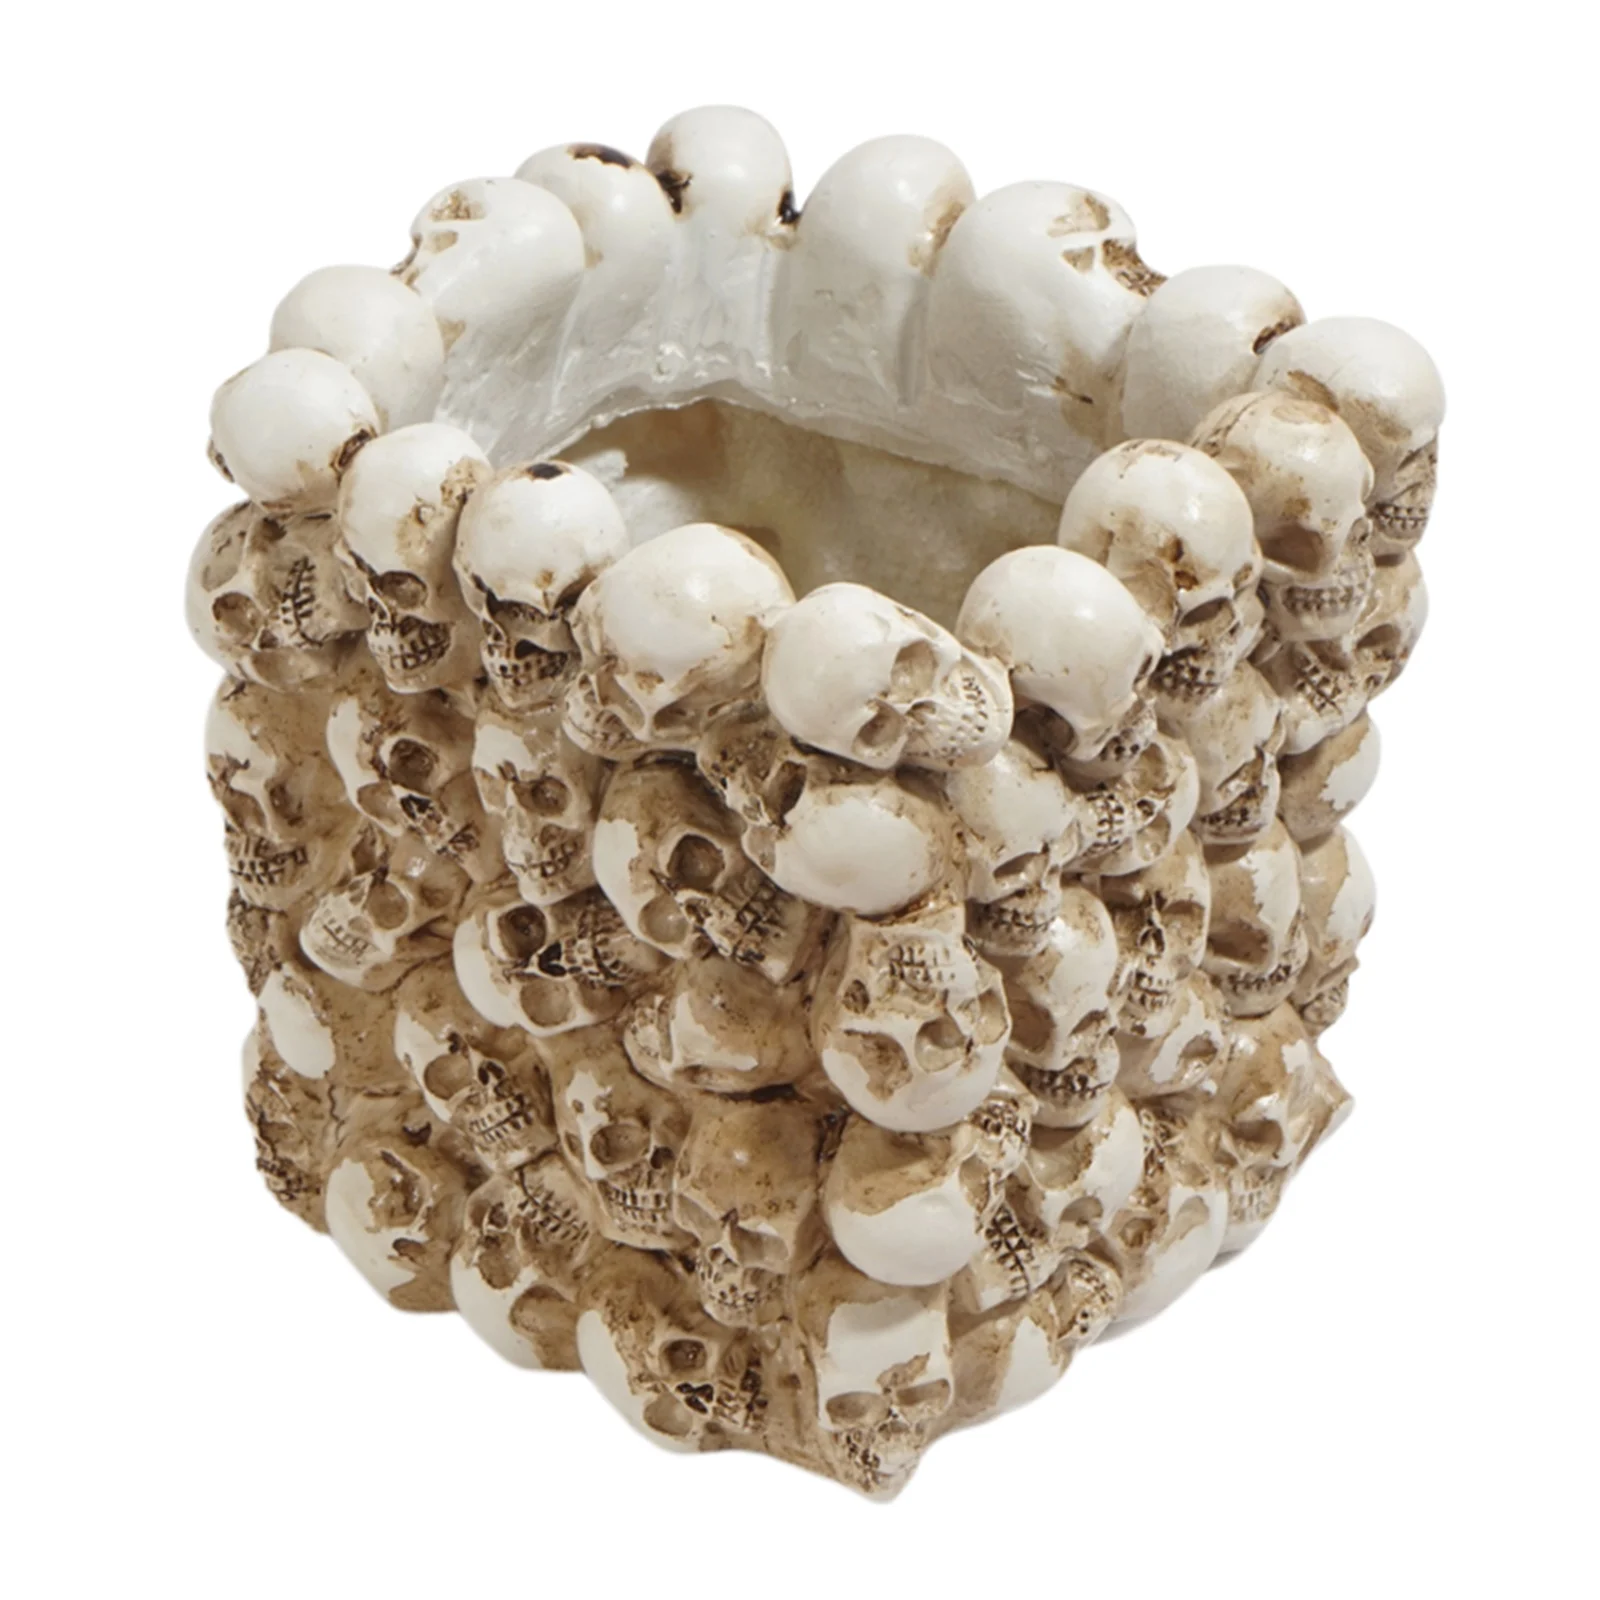 Каучуковая модель человеческого черепа цветочный горшок сияющая тарелка для